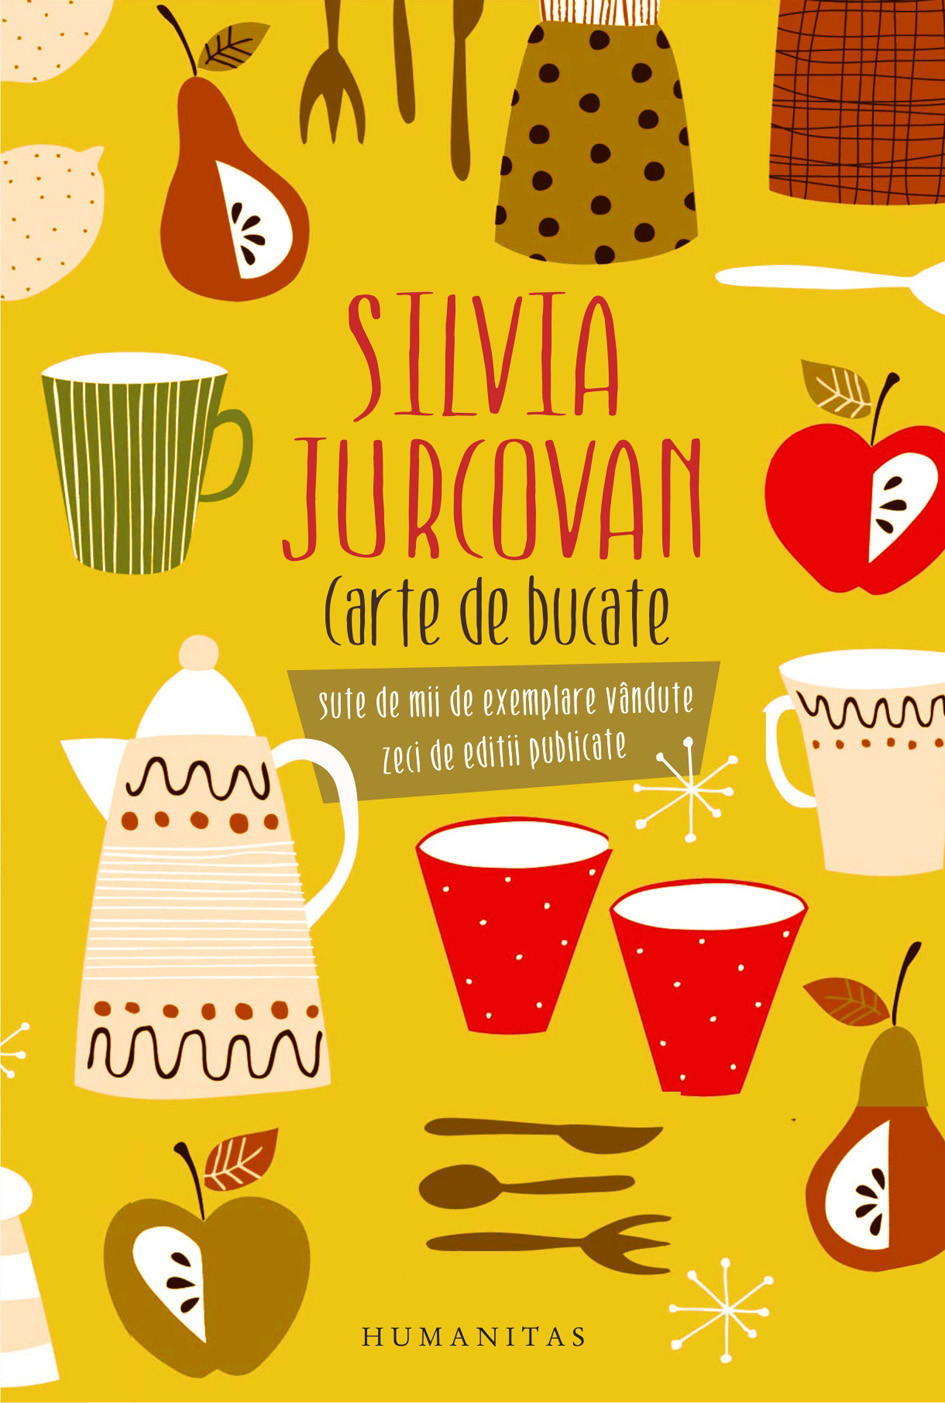 Carte de bucate | Silvia Jurcovan carturesti.ro imagine 2022 cartile.ro